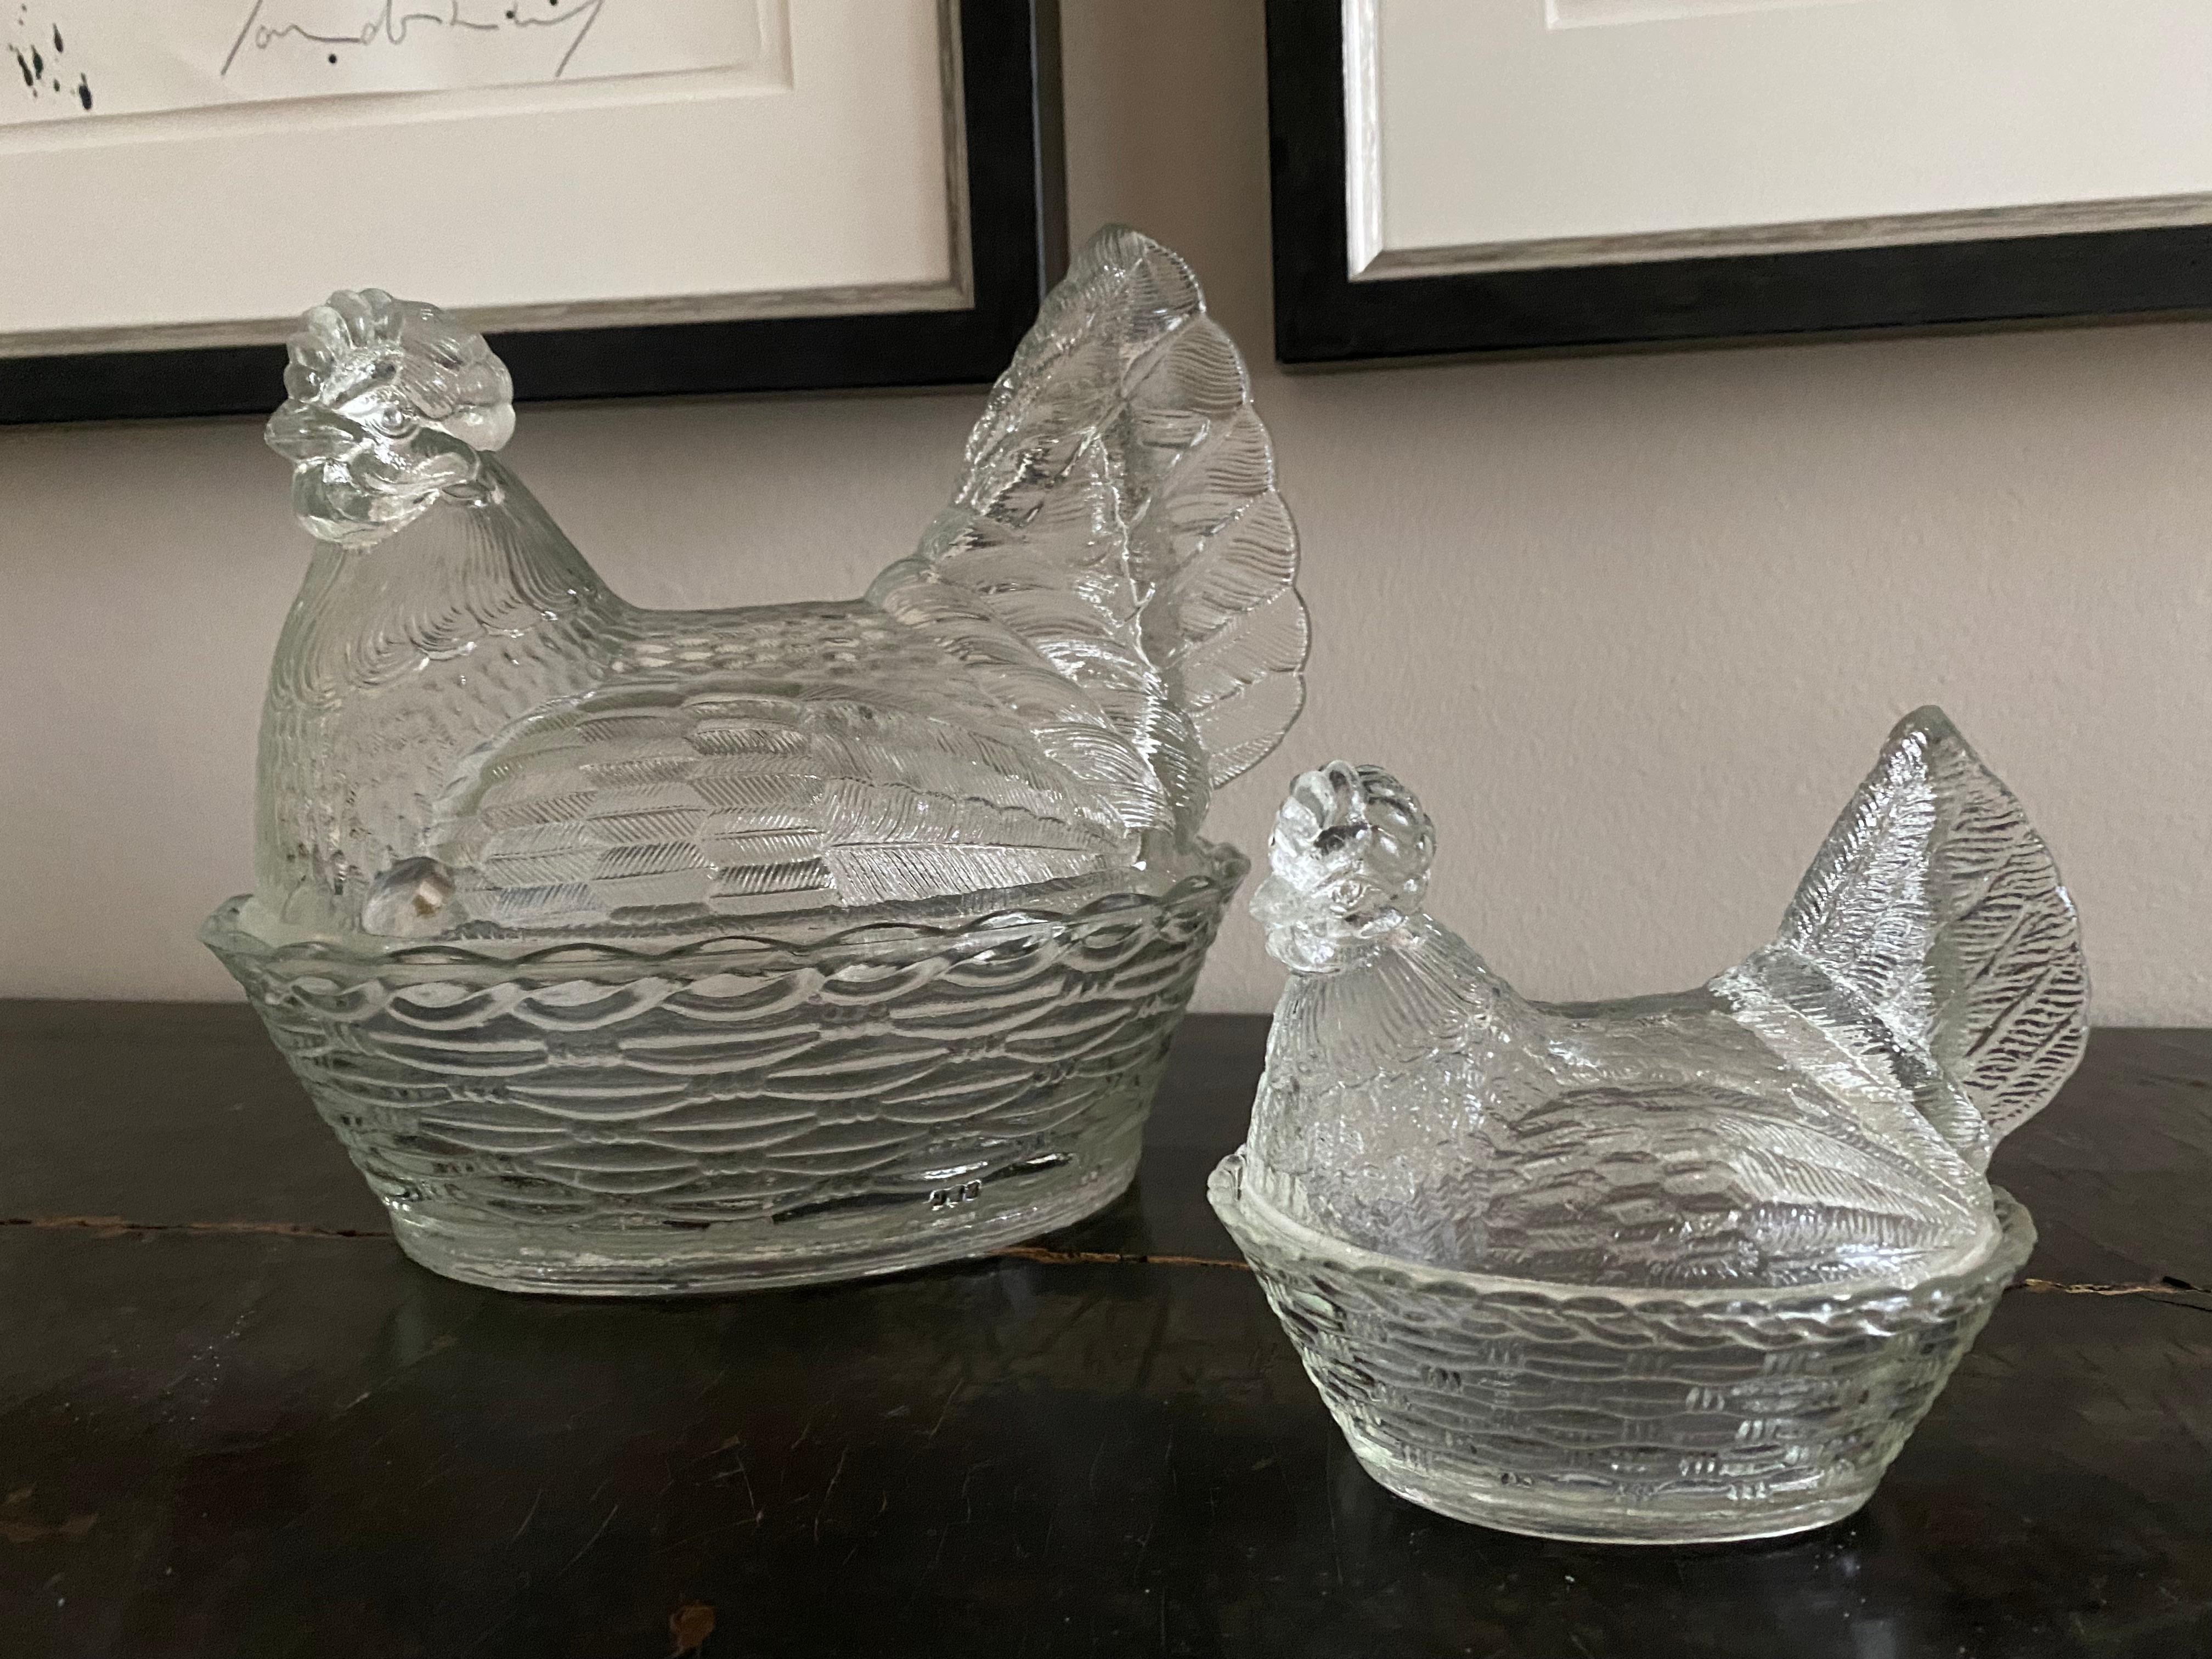 Ein Paar Dosen/Bonbonnieren mit Deckel aus Pressglas, Hühner in einem Korb
Diese Dosen mit Deckel sind ein französischer Klassiker. Die Dosen sind aus gepresstem Glas, fein beschriftet mit sauberen scharfen Kanten. Sie können darin Süßigkeiten und